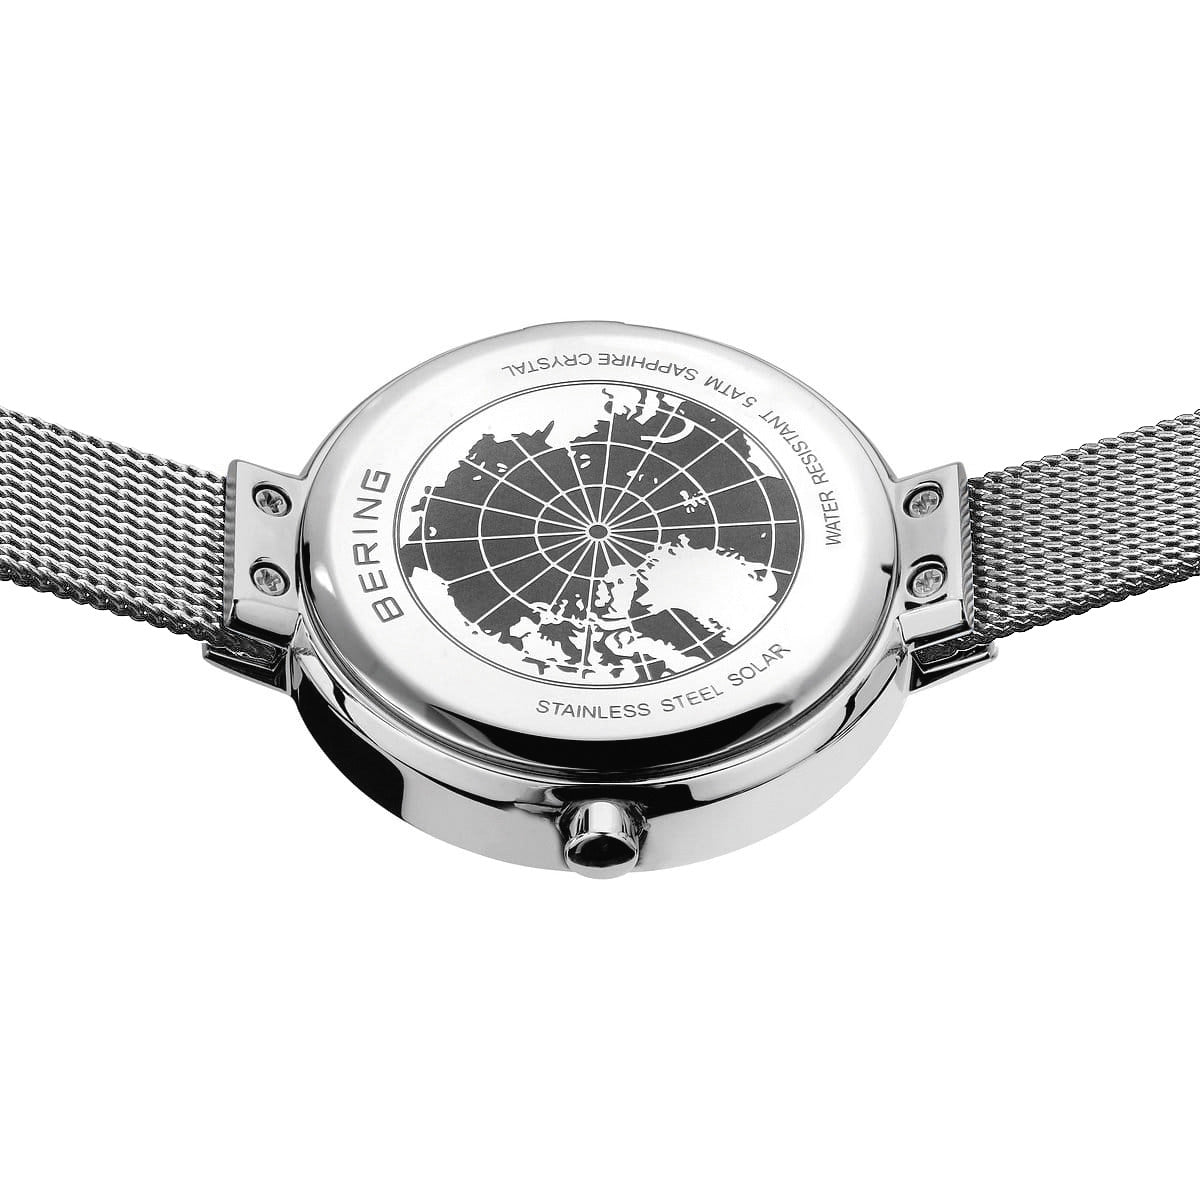 ベーリング BERING 日本限定モデル ソーラー 腕時計 レディース スカンジナビアンソーラー Scandinavian Solar 14627-002